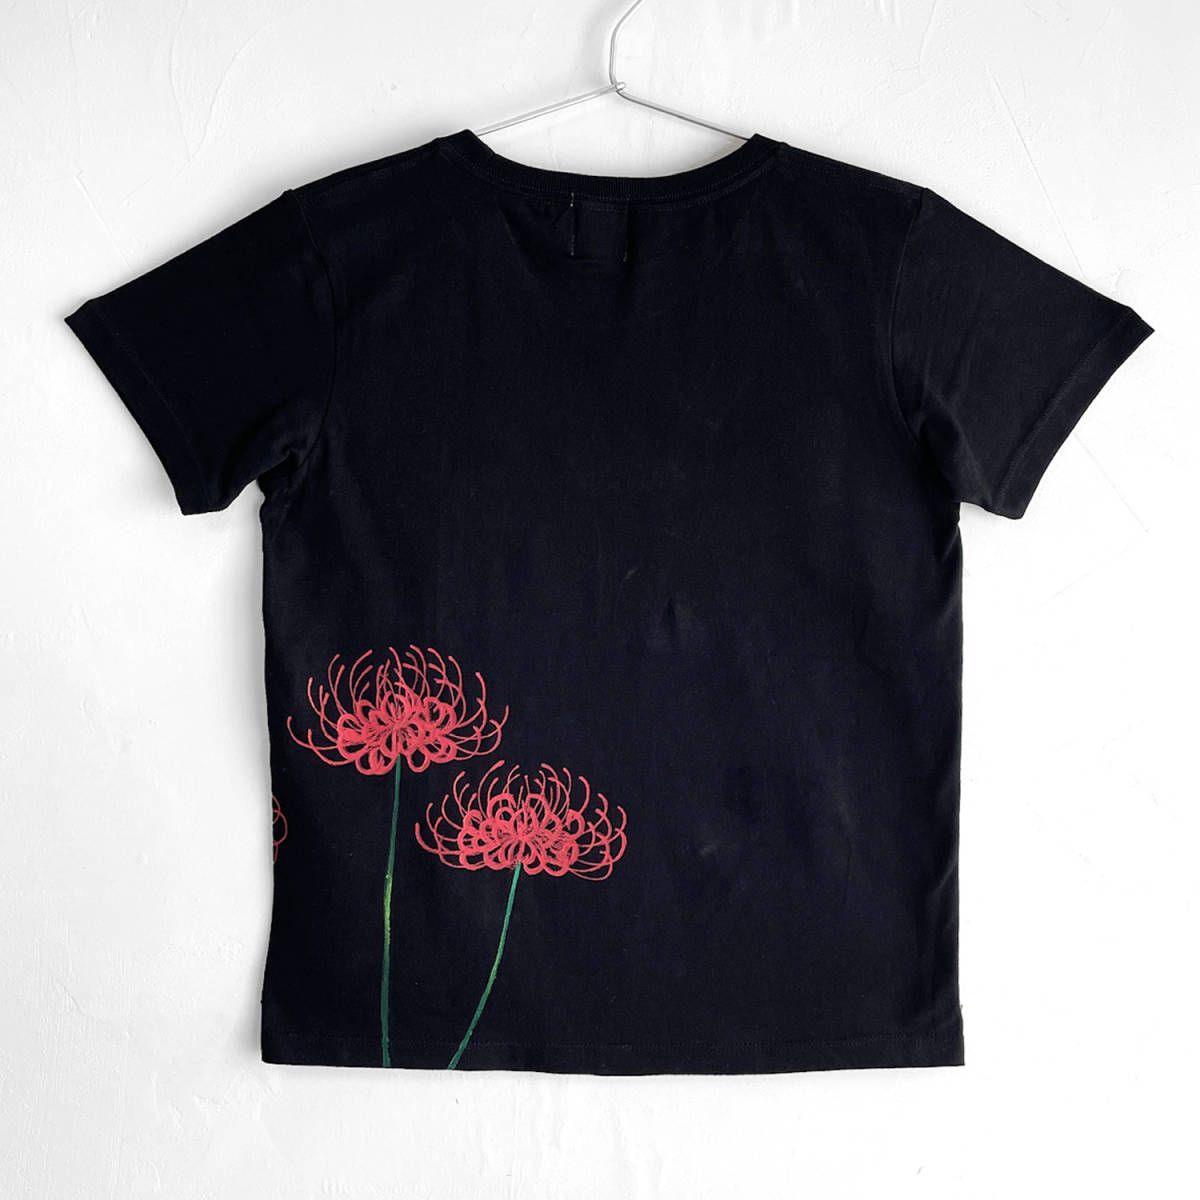  lady's T-shirt L size black .. floral print T-shirt hand made hand .. T-shirt peace pattern floral print autumn winter 